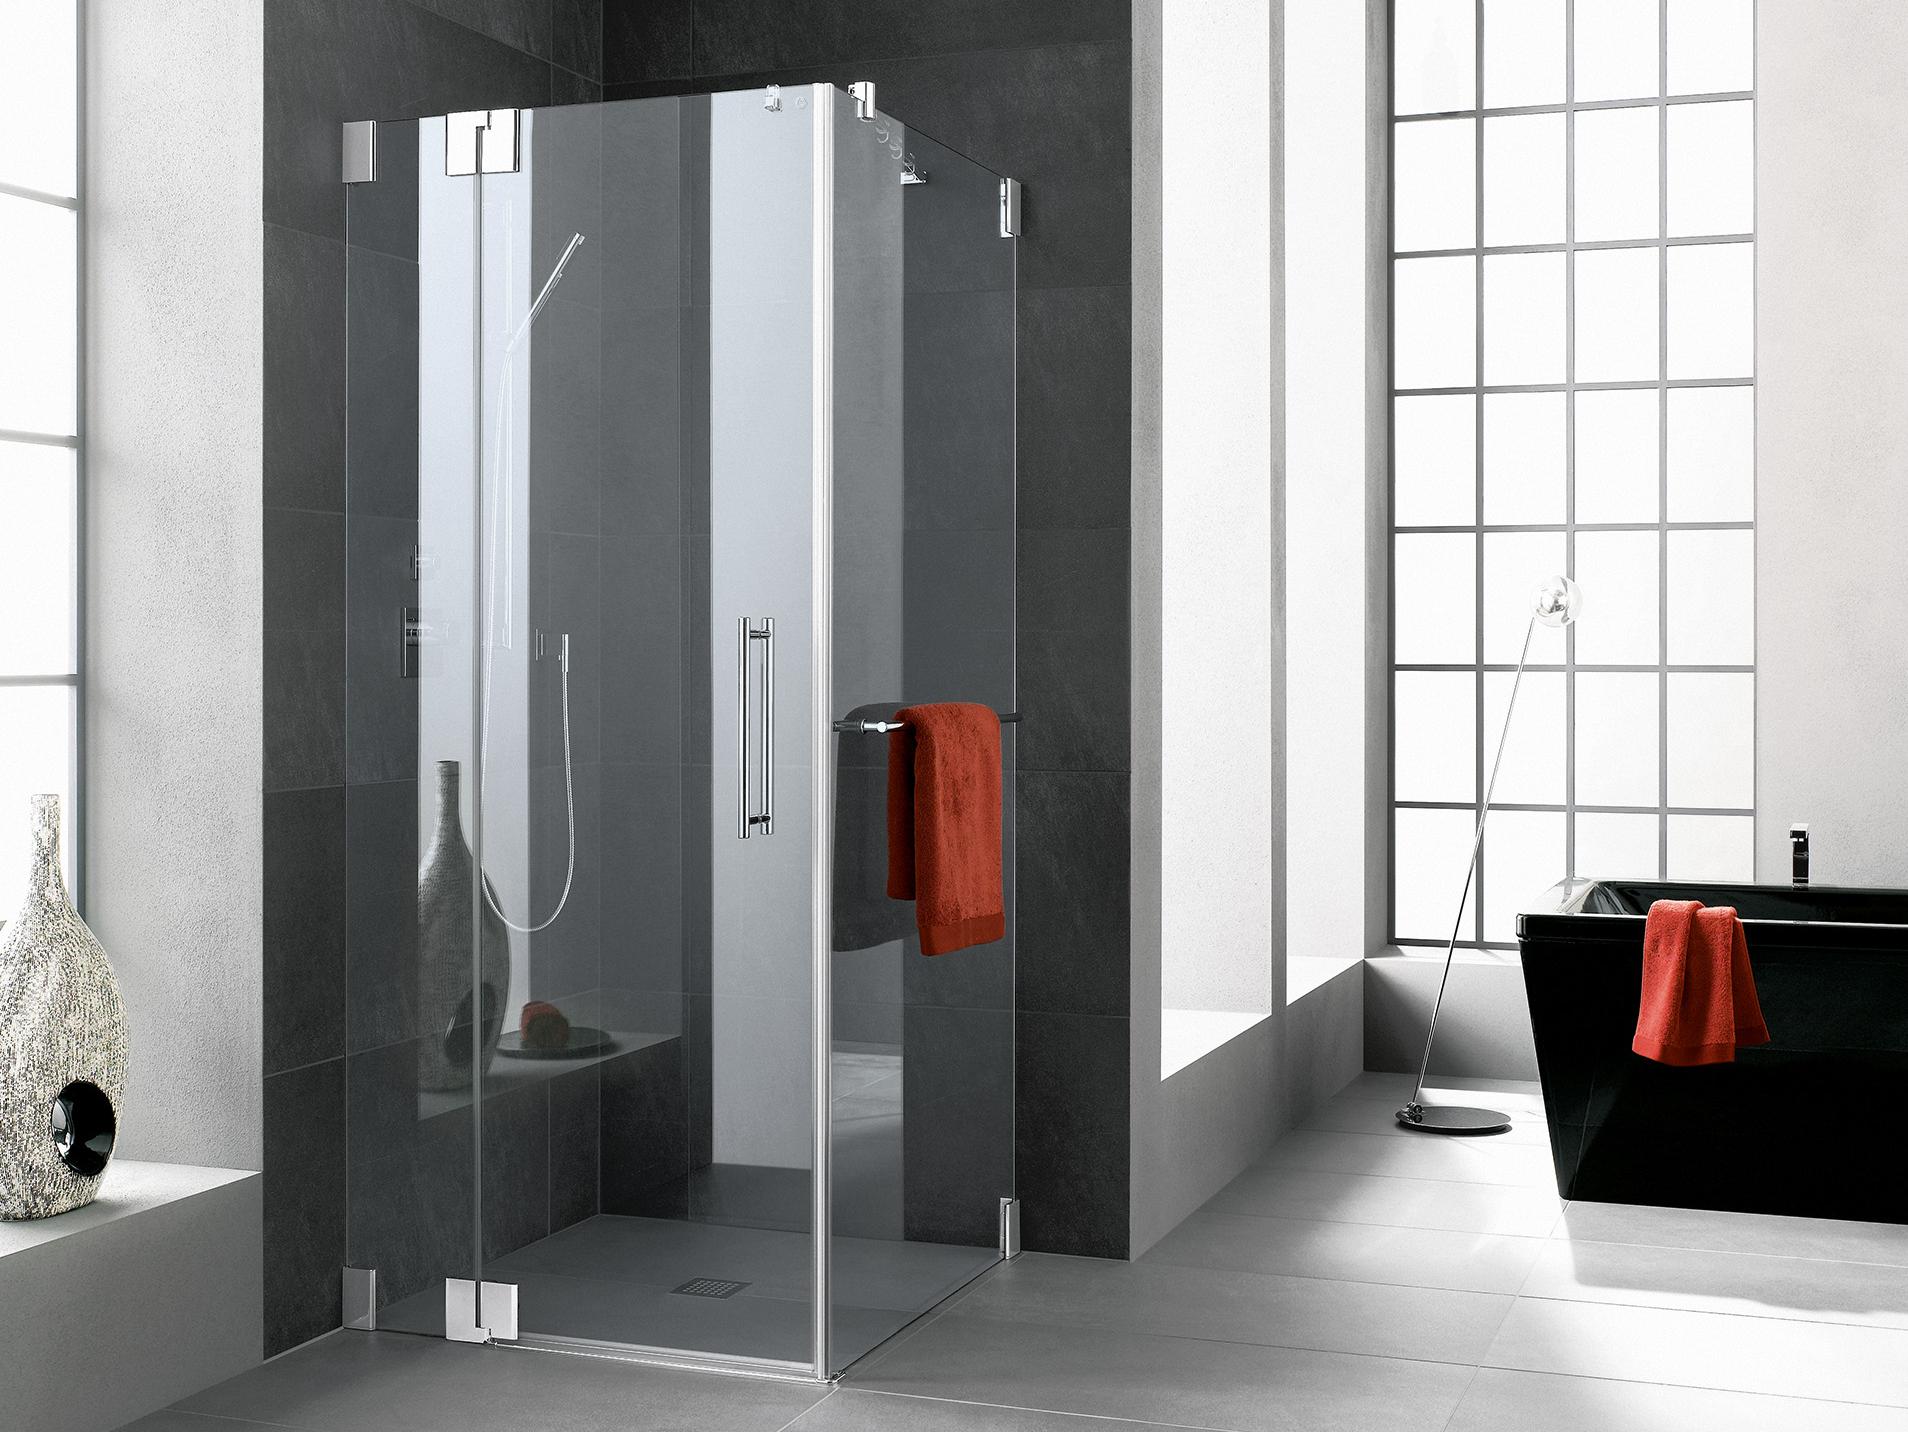 Pantový sprchový kout Kermi PASA 1-křídlé kyvné dveře s pevným polem a boční stěna